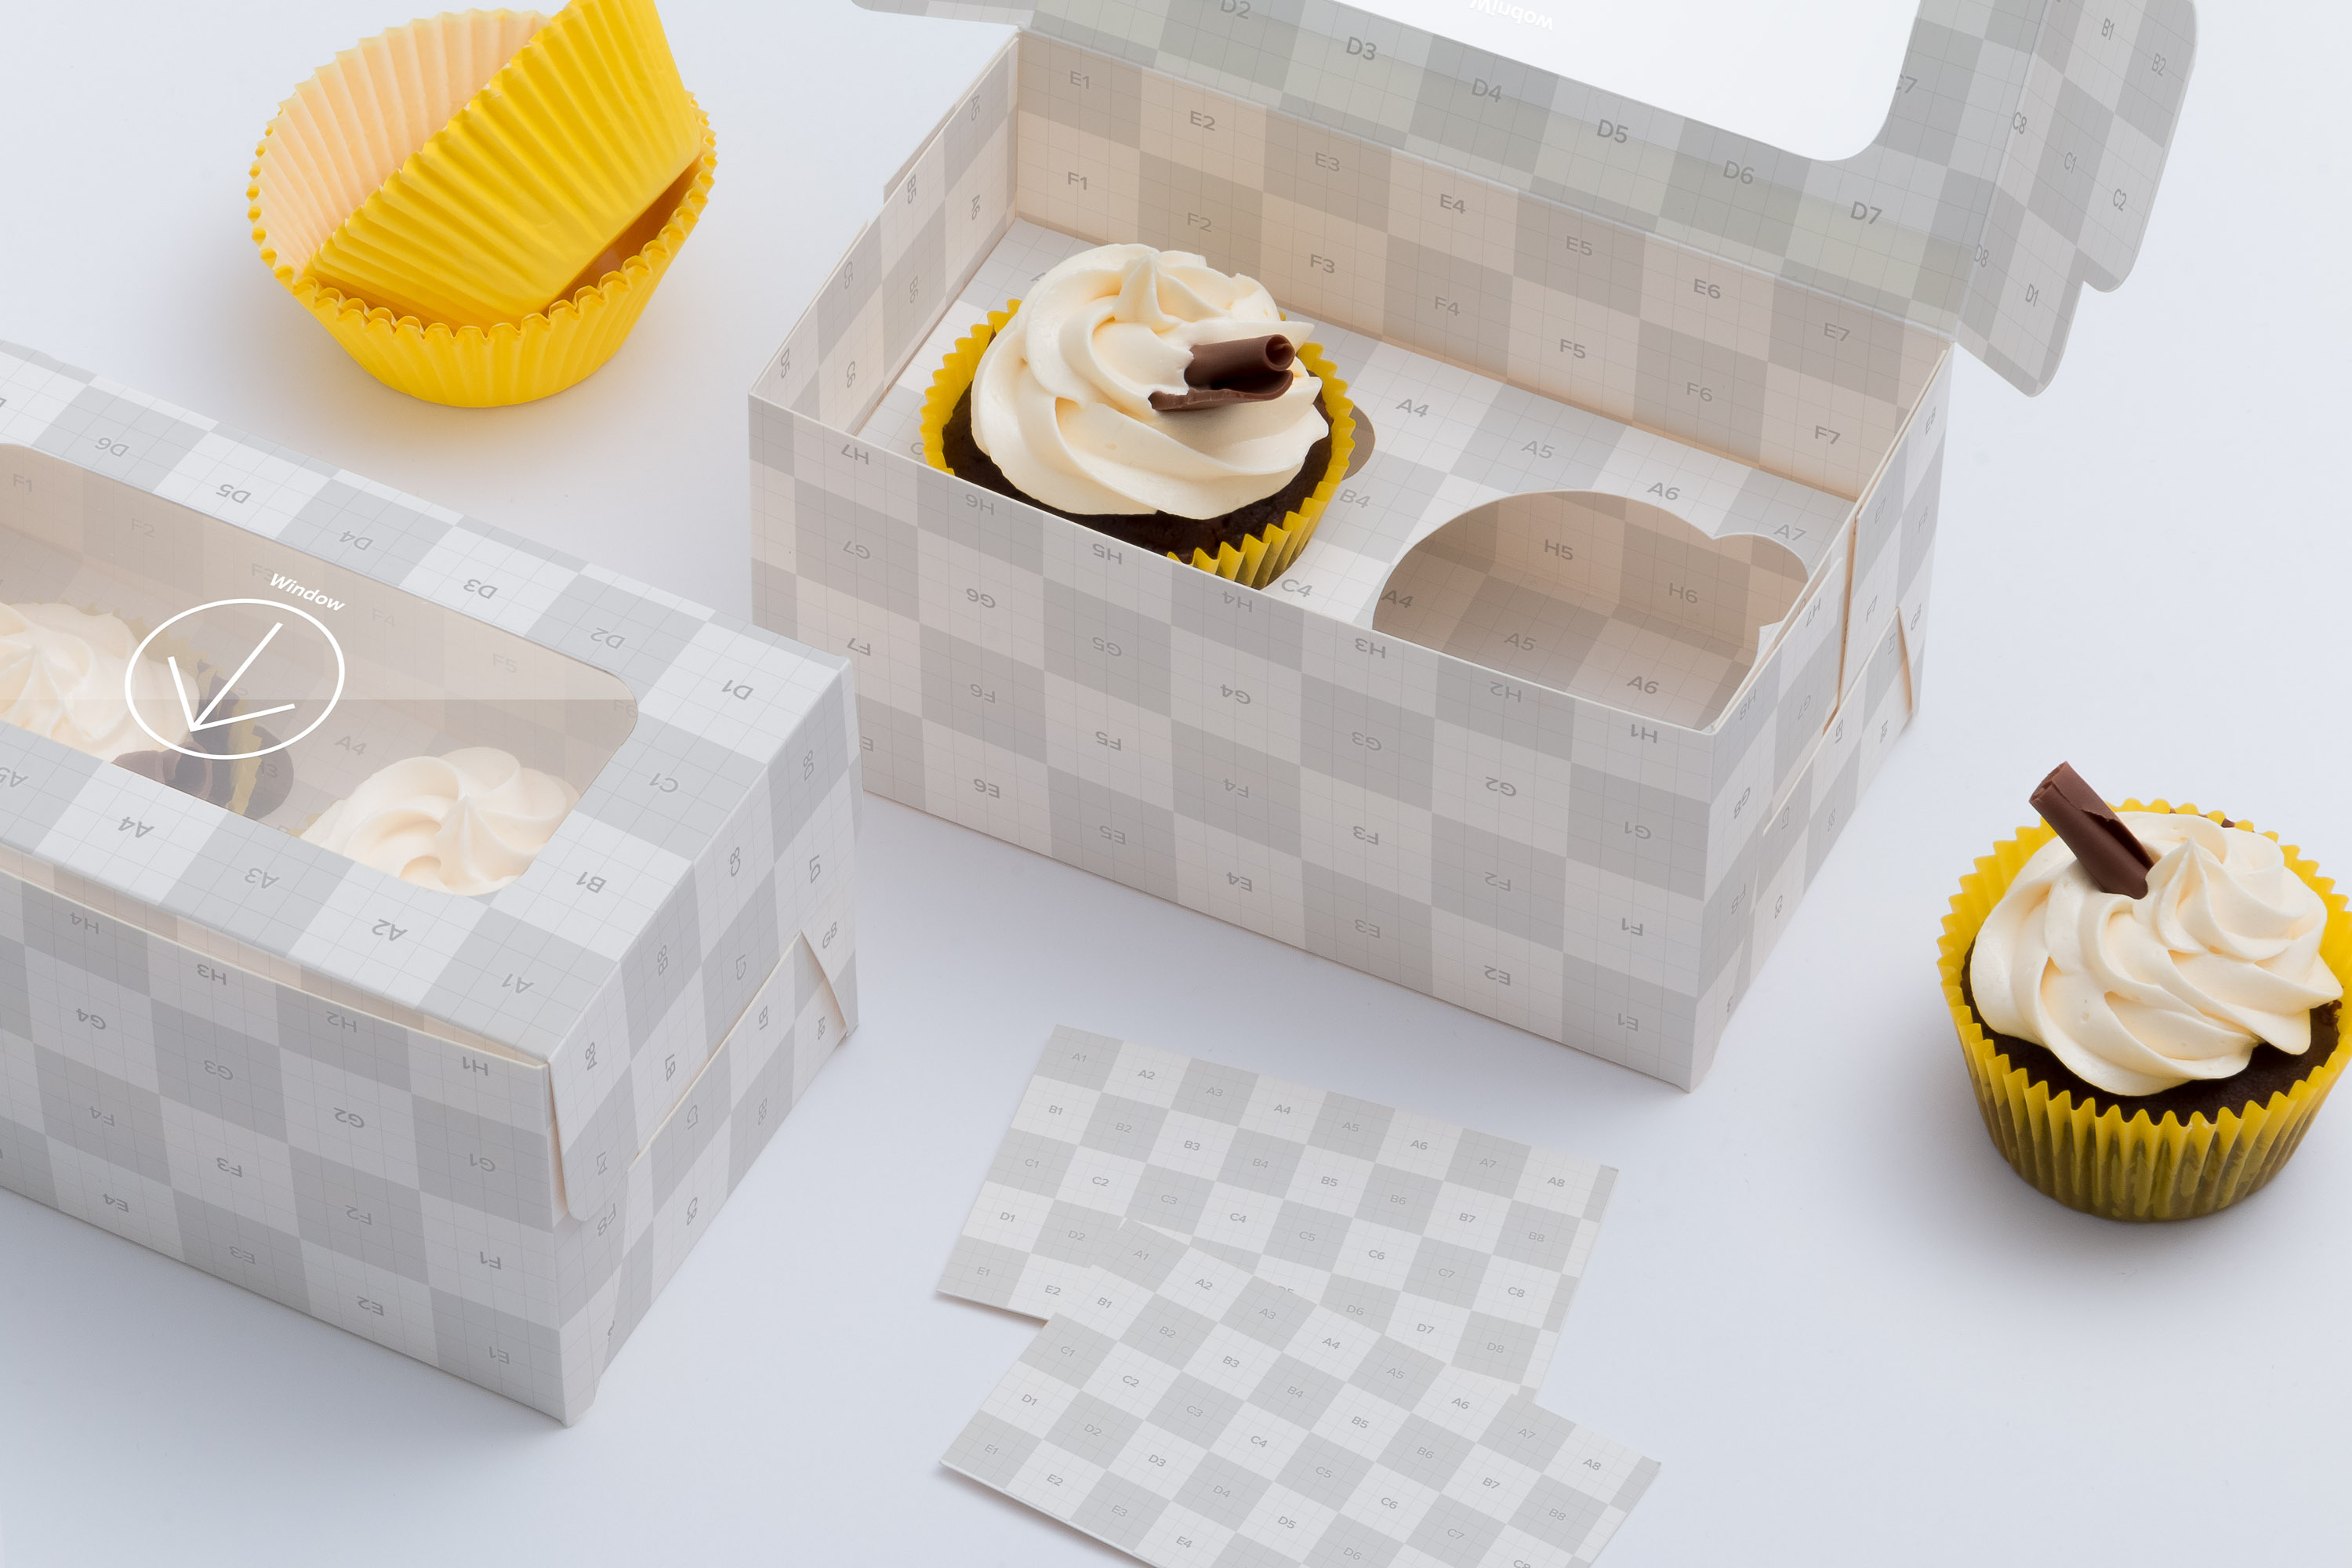 两只装纸杯蛋糕糕点包装外观设计样机模板03 Two Cupcake Box Mockup 03插图(1)